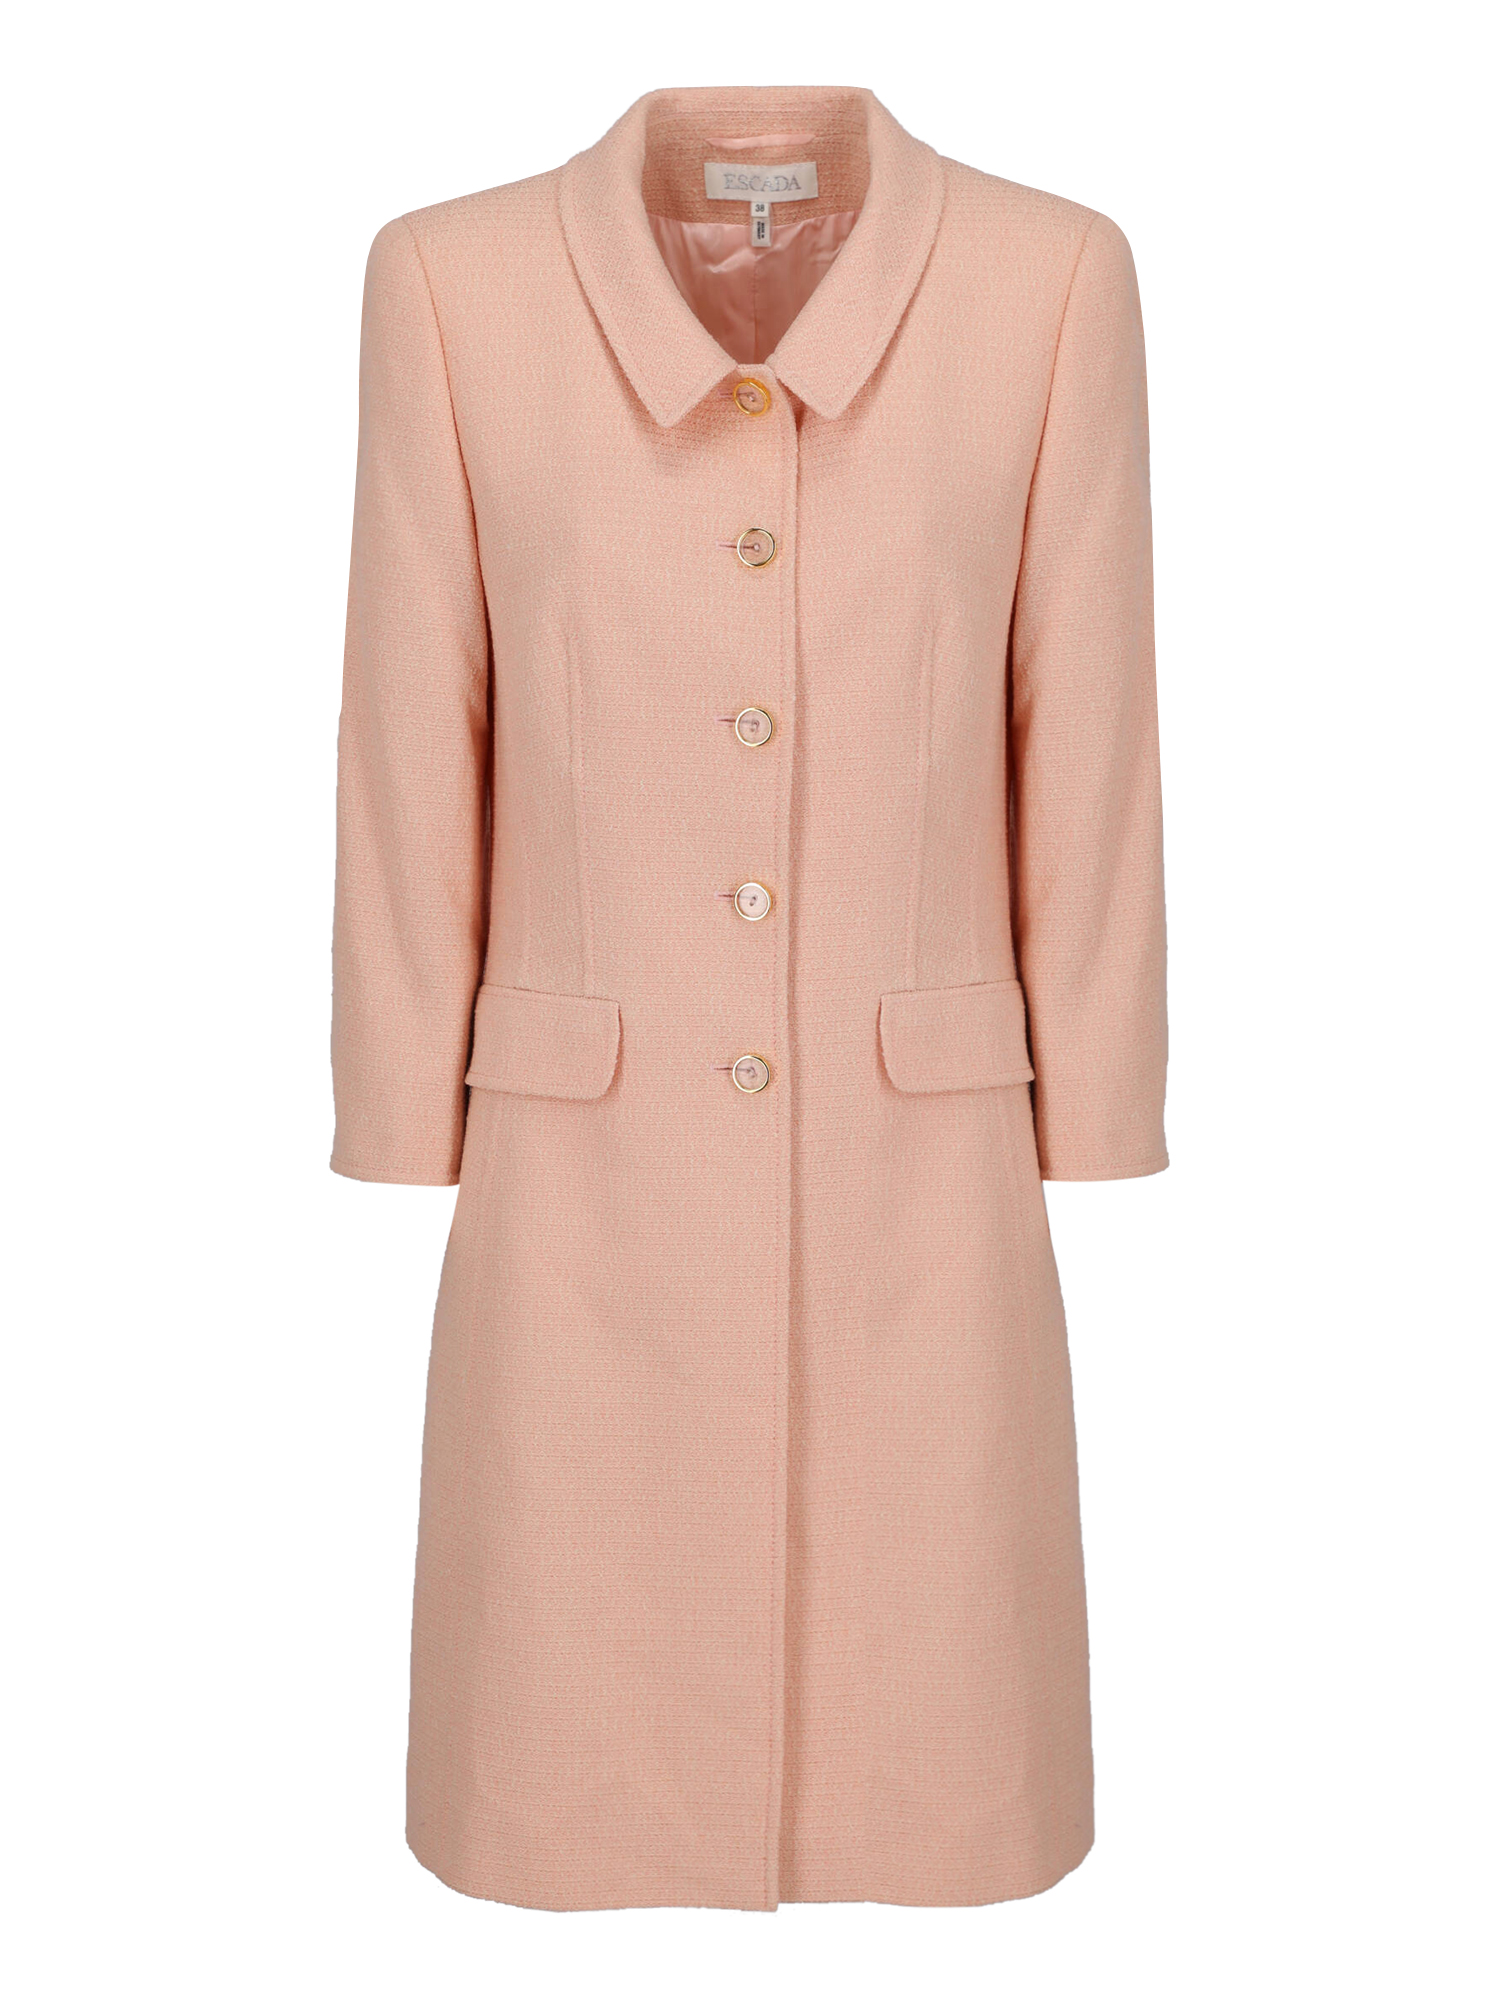 Vestes Pour Femme - Escada - En Wool Pink - Taille:  -